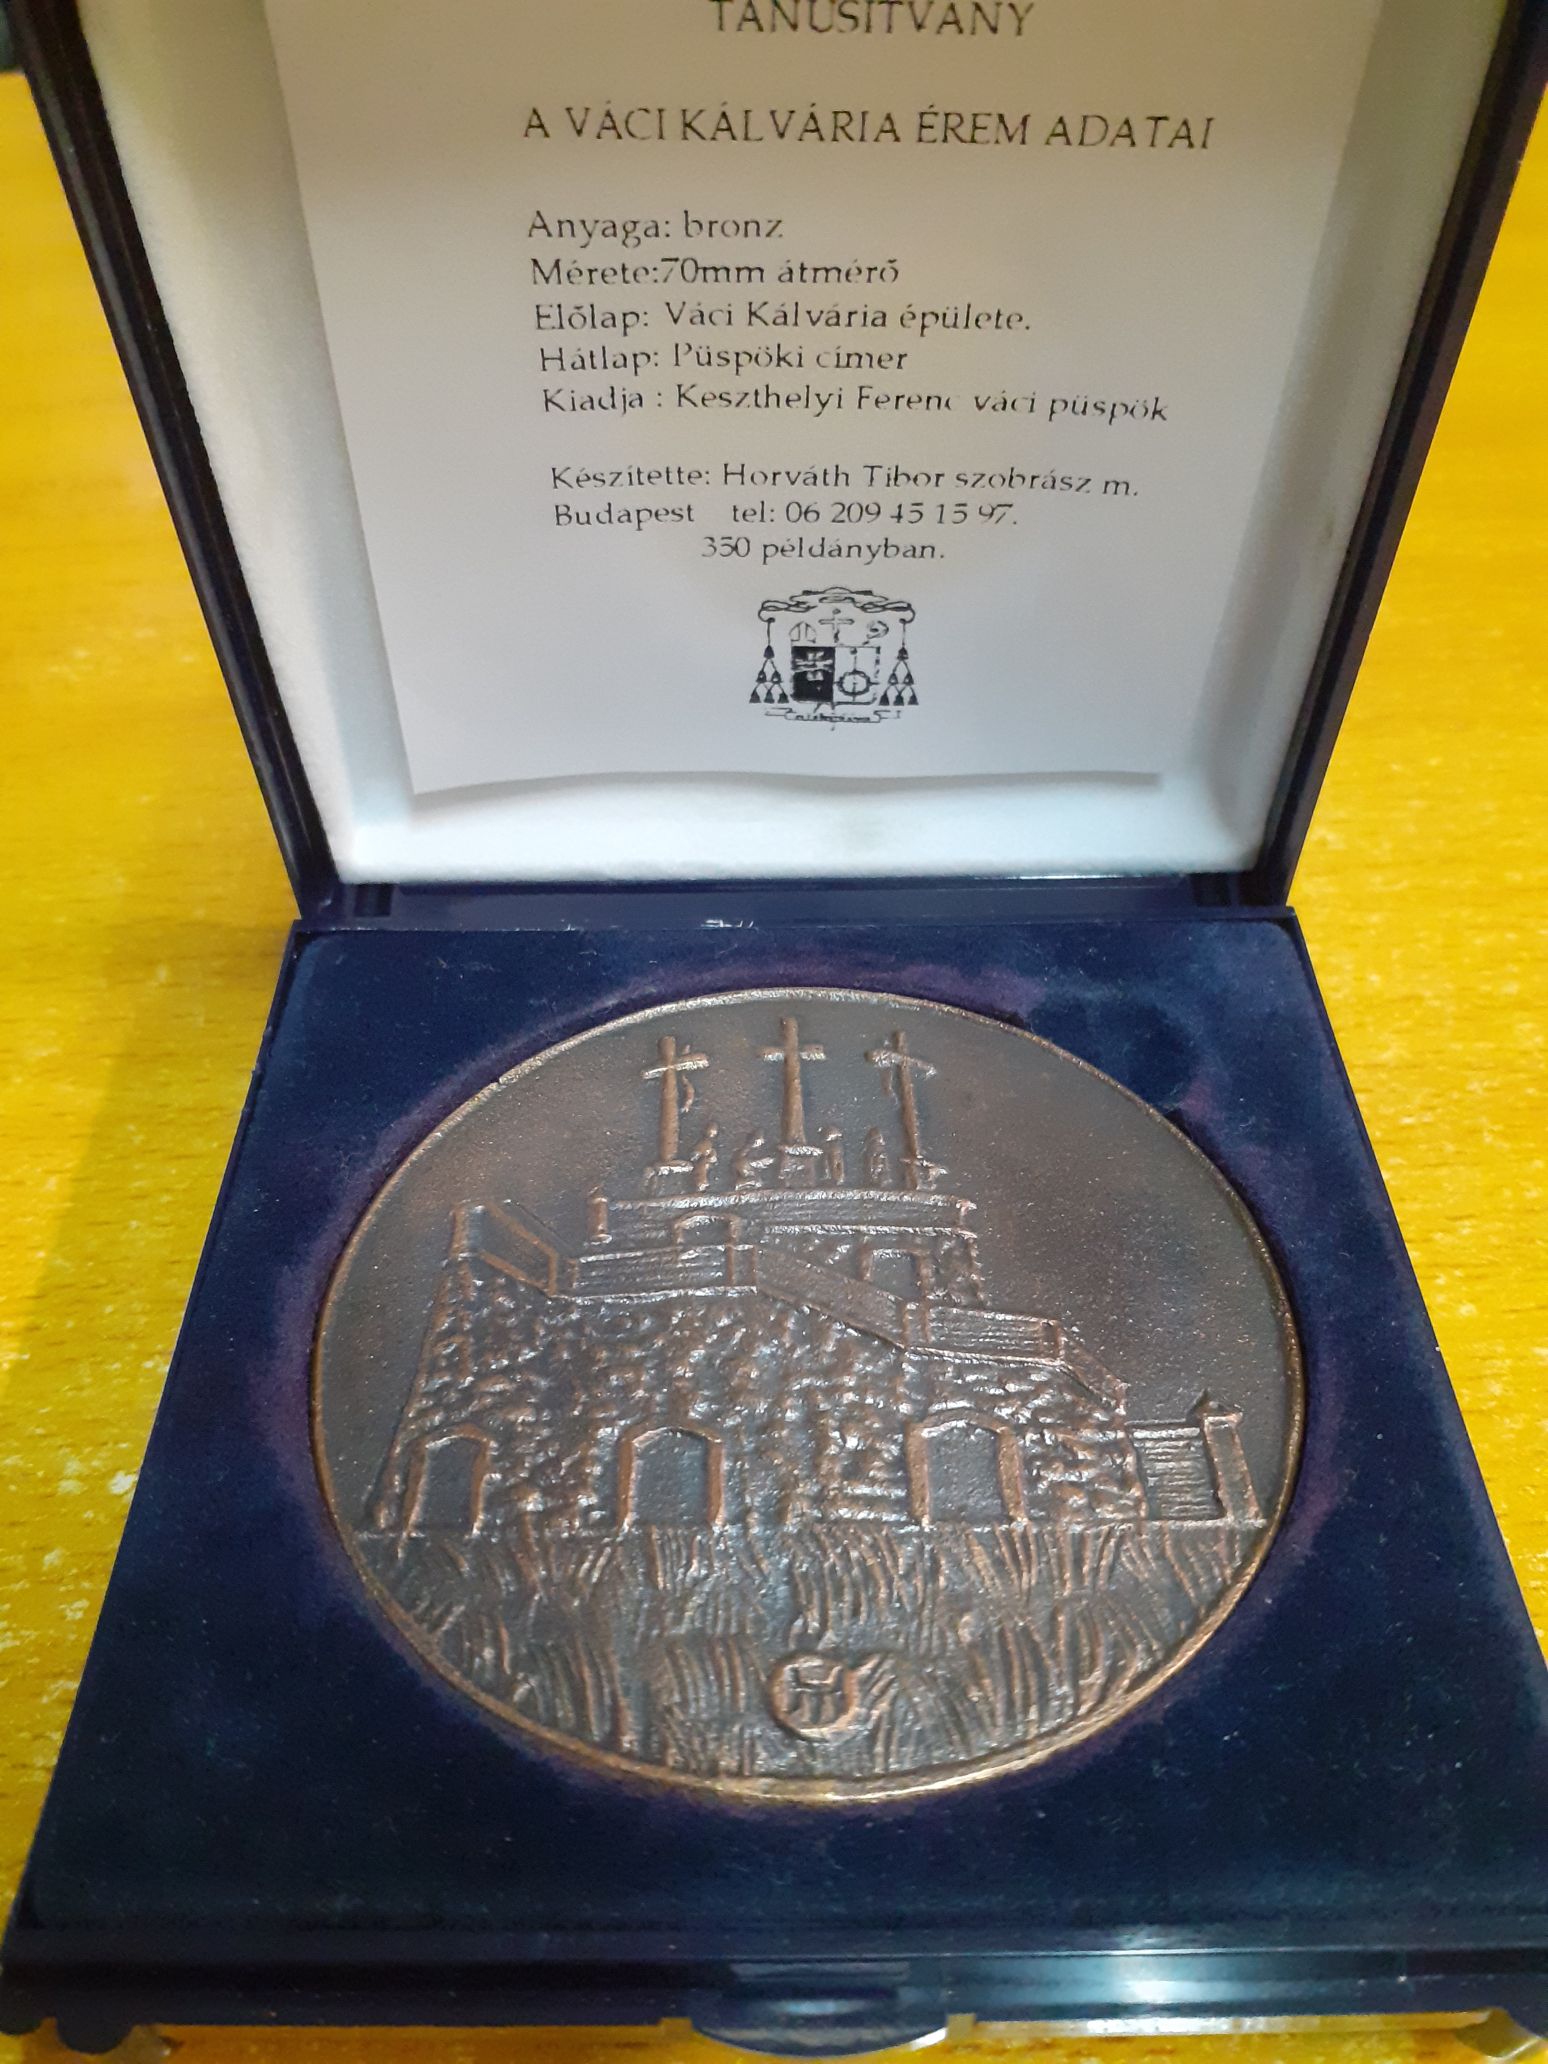 Ungaria 2001 - Medalie Vaci Kalvaria, Horvath Tibor